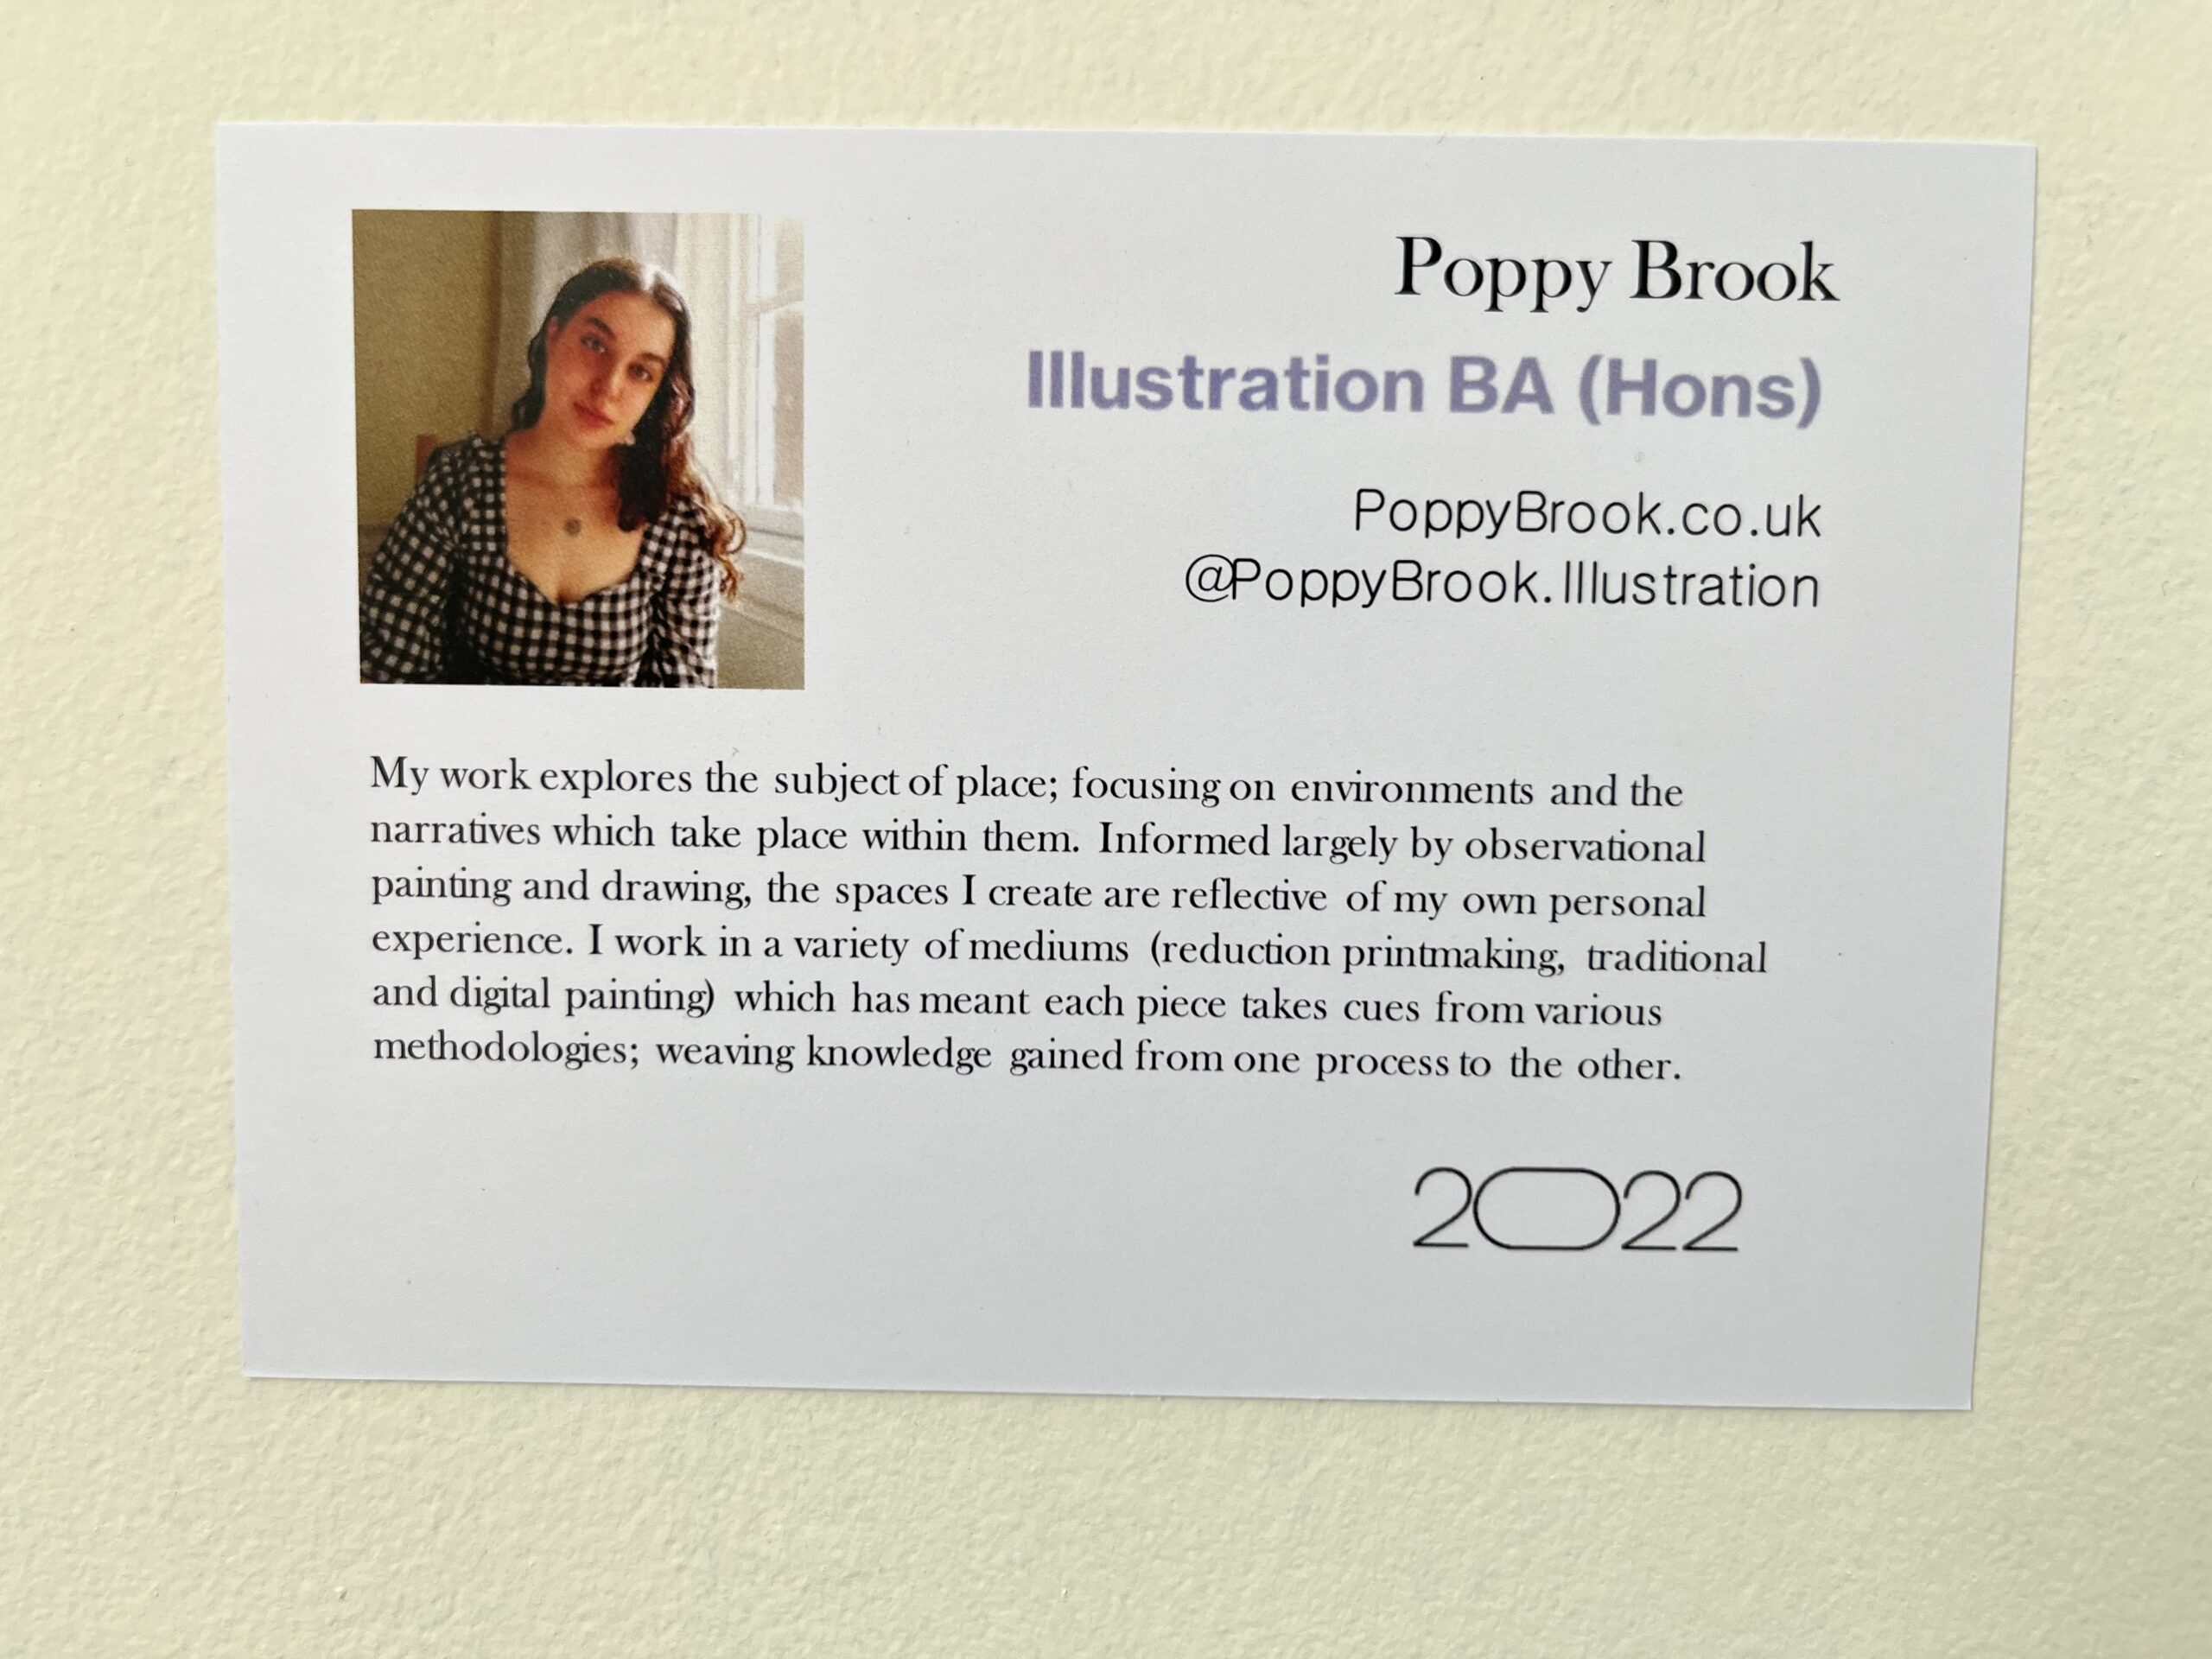 Poppy Brook Exhibition